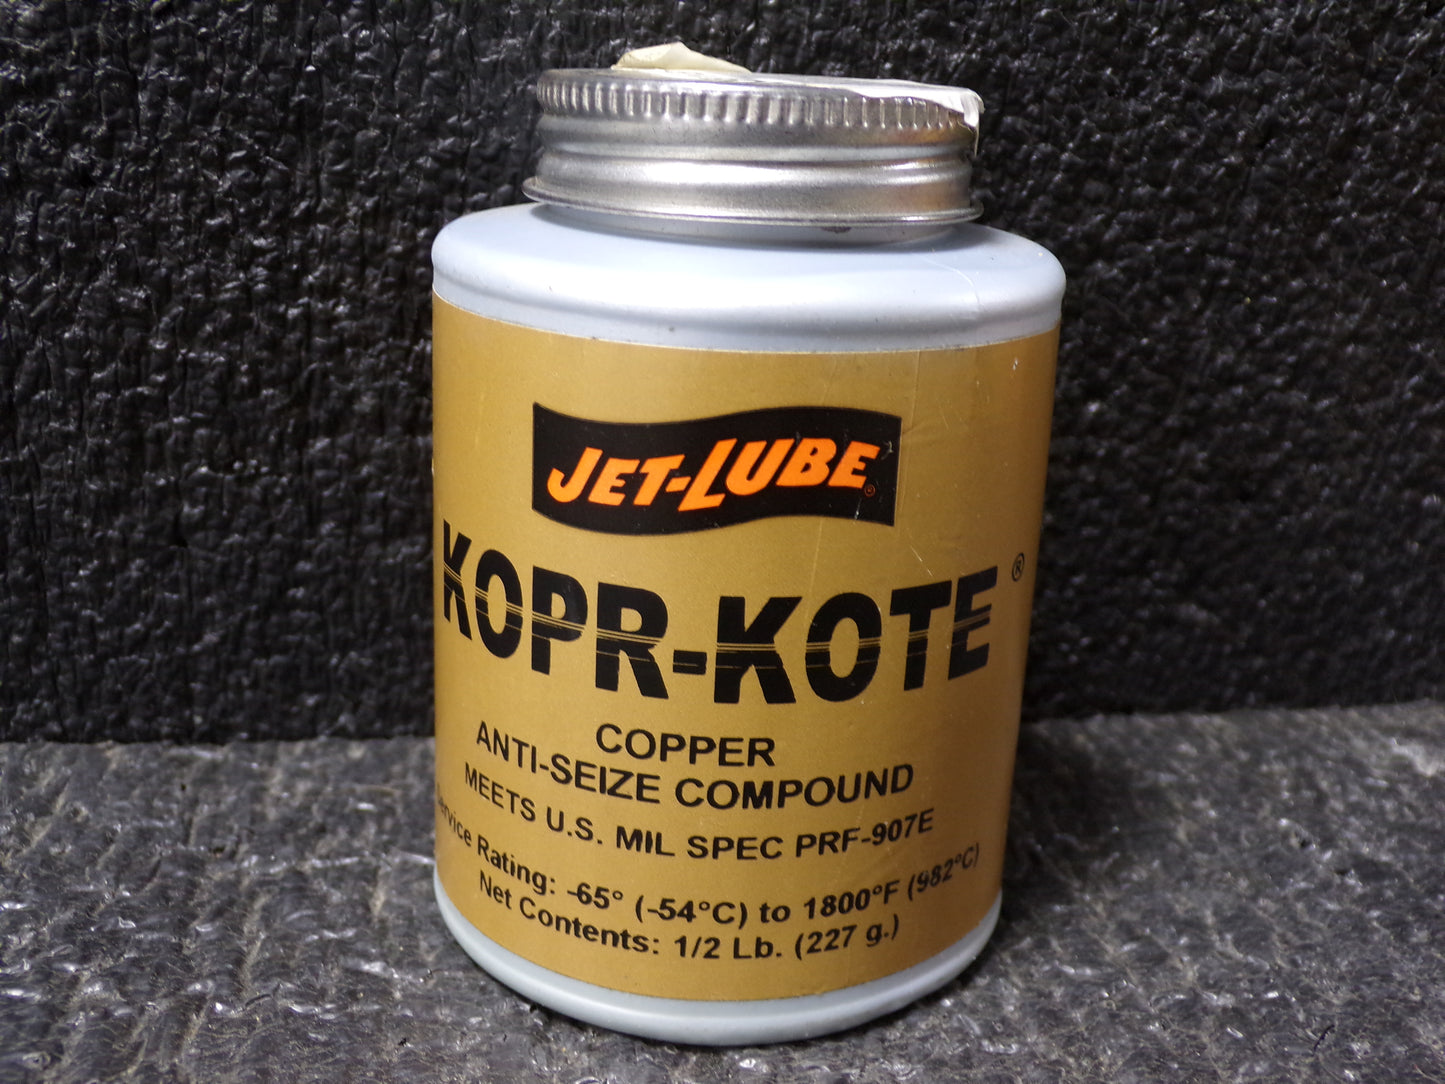 JET-LUBE General Purpose Anti-Seize, 0.5 lb, Brush-Top Can, Copper, Paste, Kopr-Kote, -65°F, 1,800 °F (CR00407-X03)